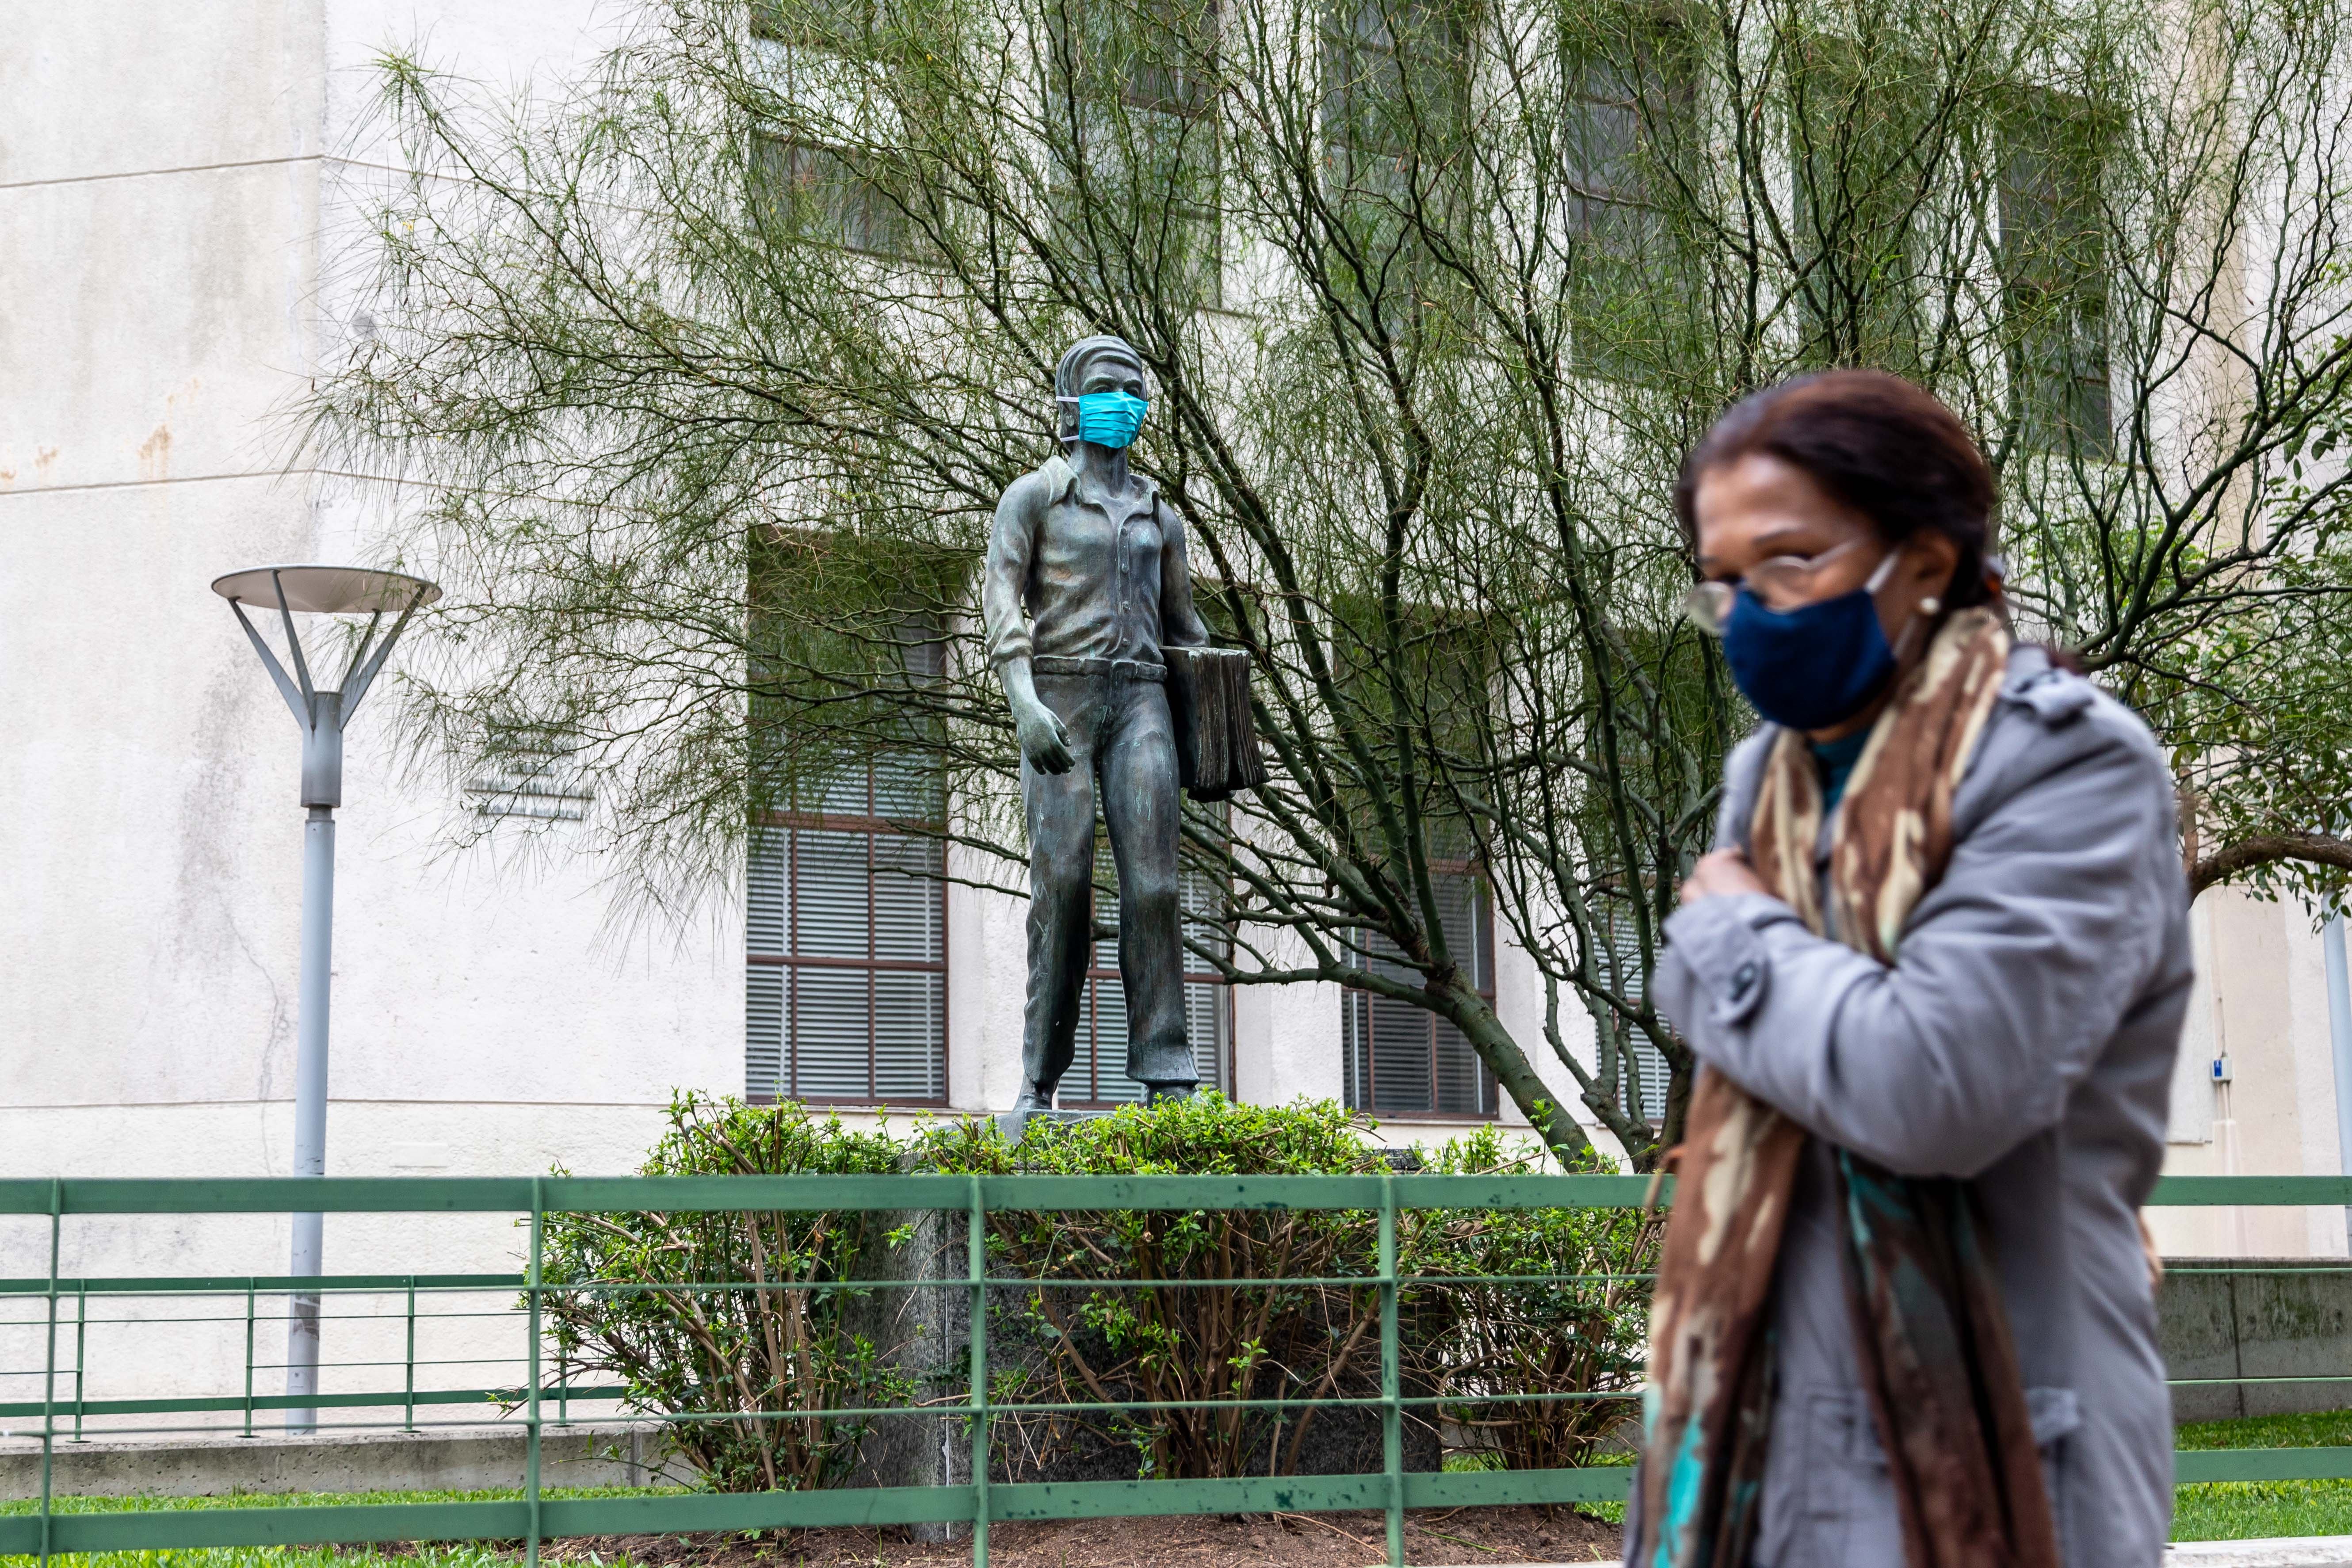 07/05/2020 Una mujer pasa frente a una estatua con mascarilla en Montevideo, acción promovida por el Gobierno para fomentar el uso de mascarilla.
ECONOMIA 
MAURICIO ZINA / ZUMA PRESS / CONTACTOPHOTO
